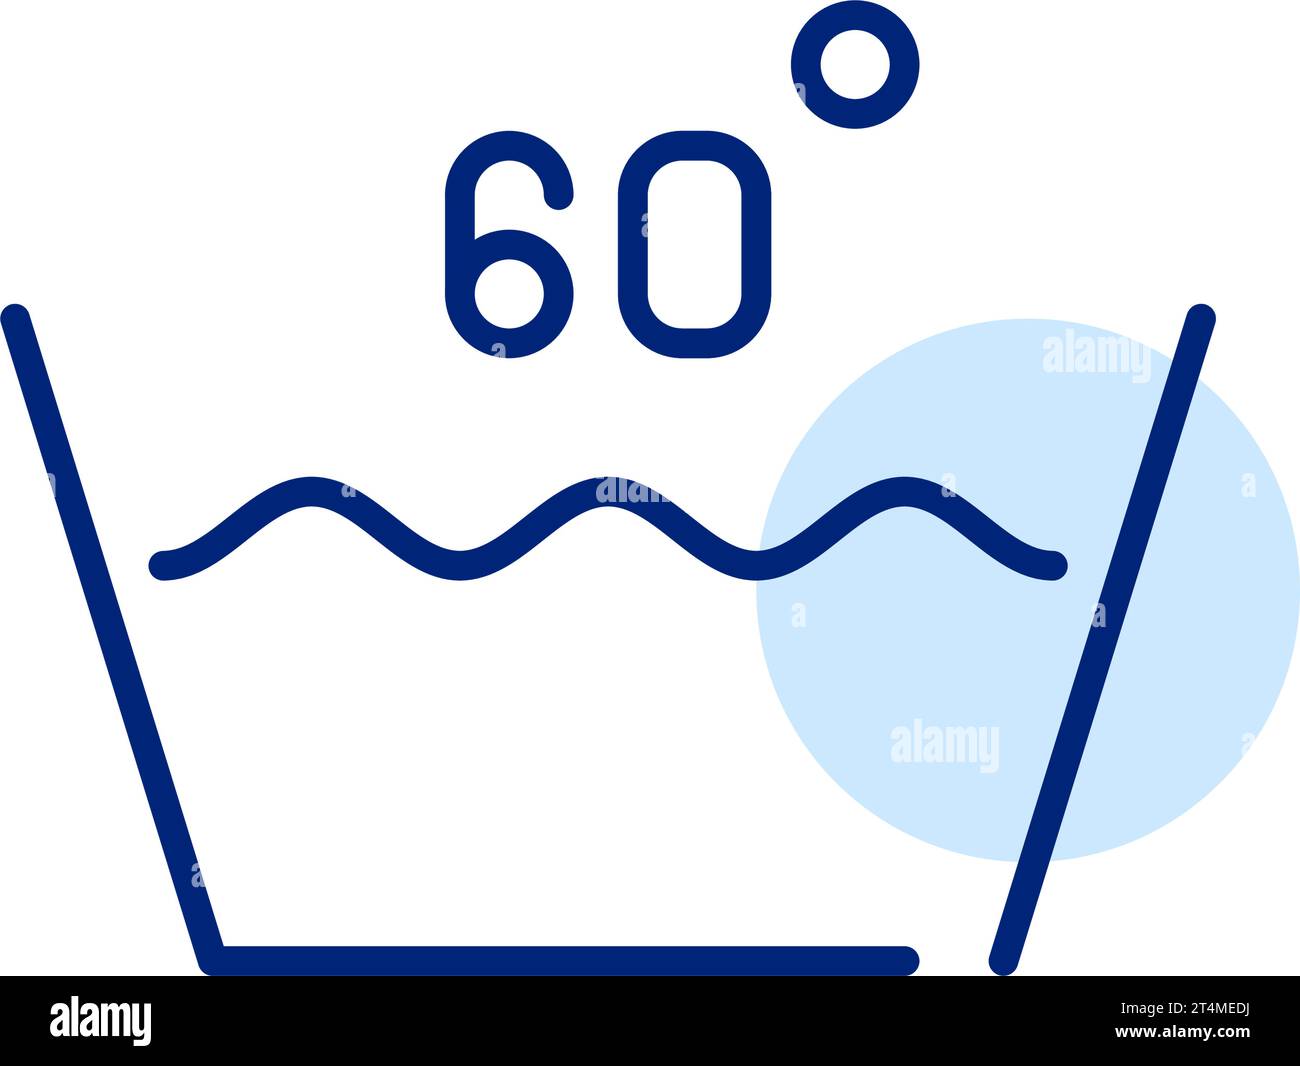 60 degrees Banque d'images vectorielles - Alamy